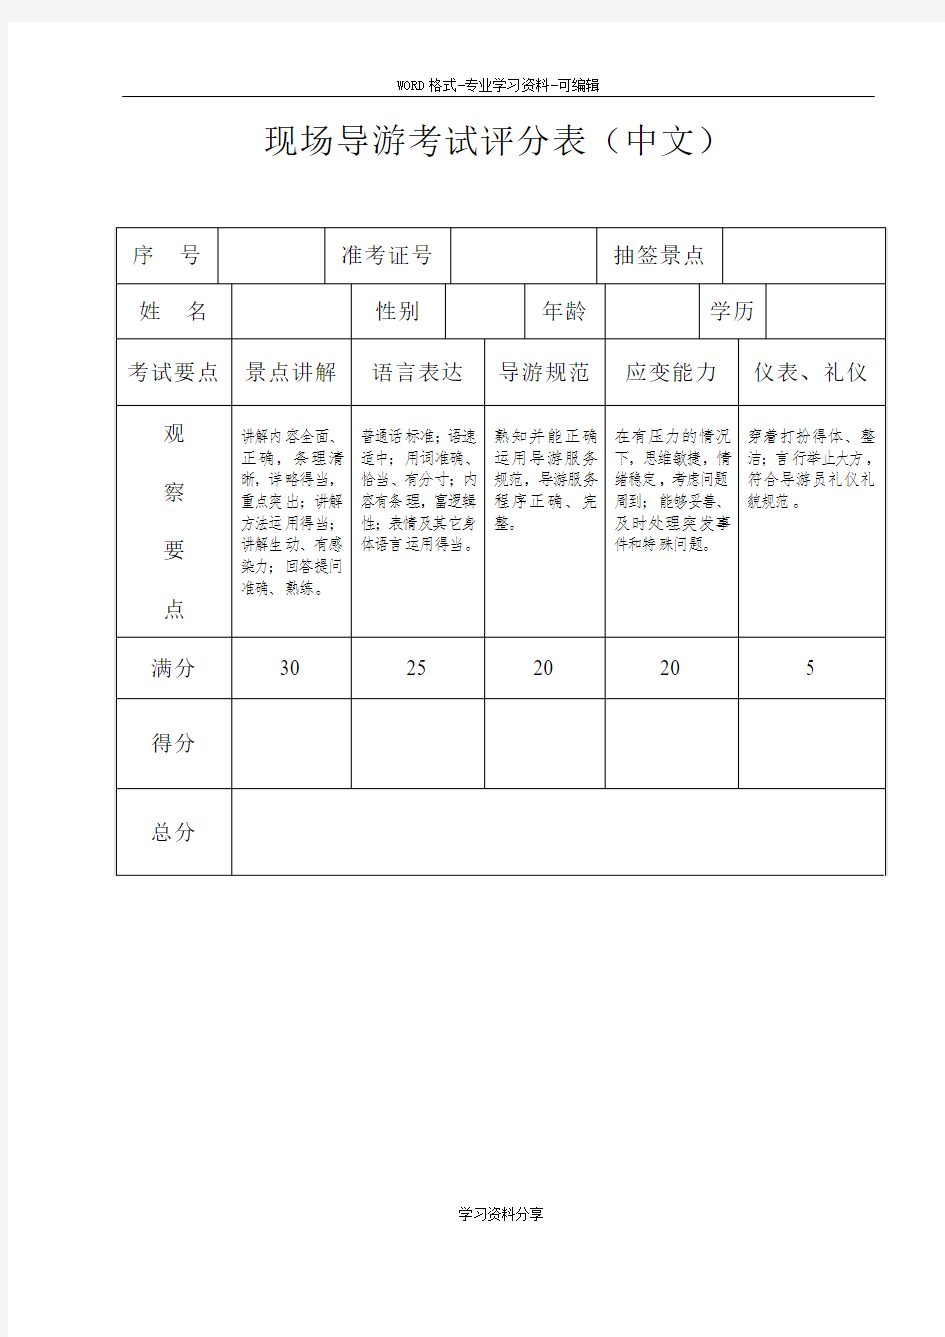 现场导游考试评分表(中文)